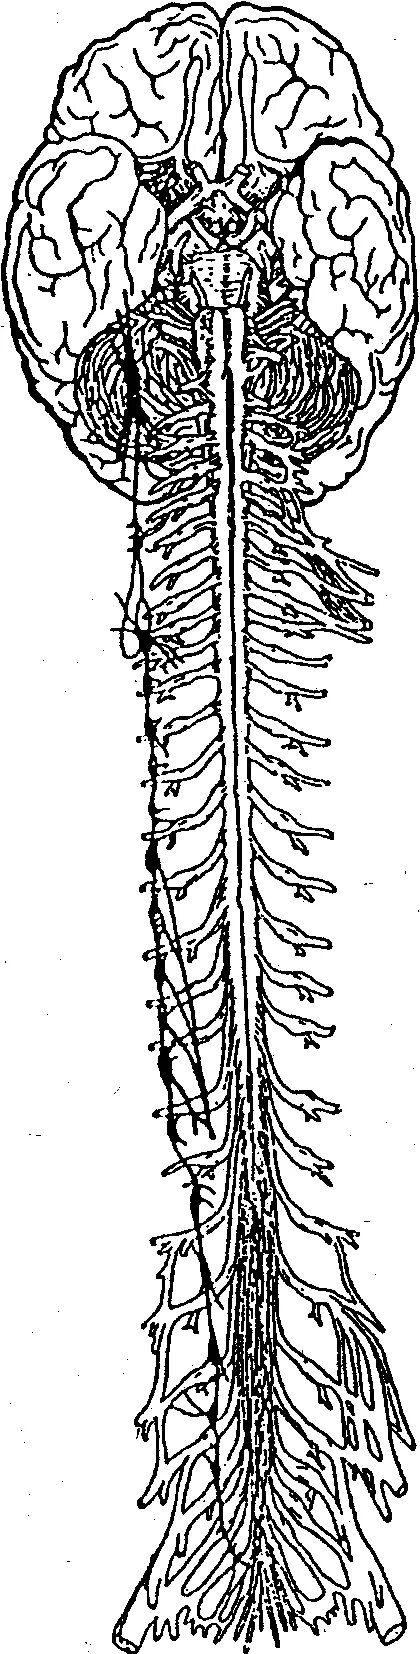 Серые столбы спинного мозга. Нервная система человека спинной мозг. Позвоночный столб и спинной мозг. Головные и спинные нервы. Головной и спинной мозг рисунок.